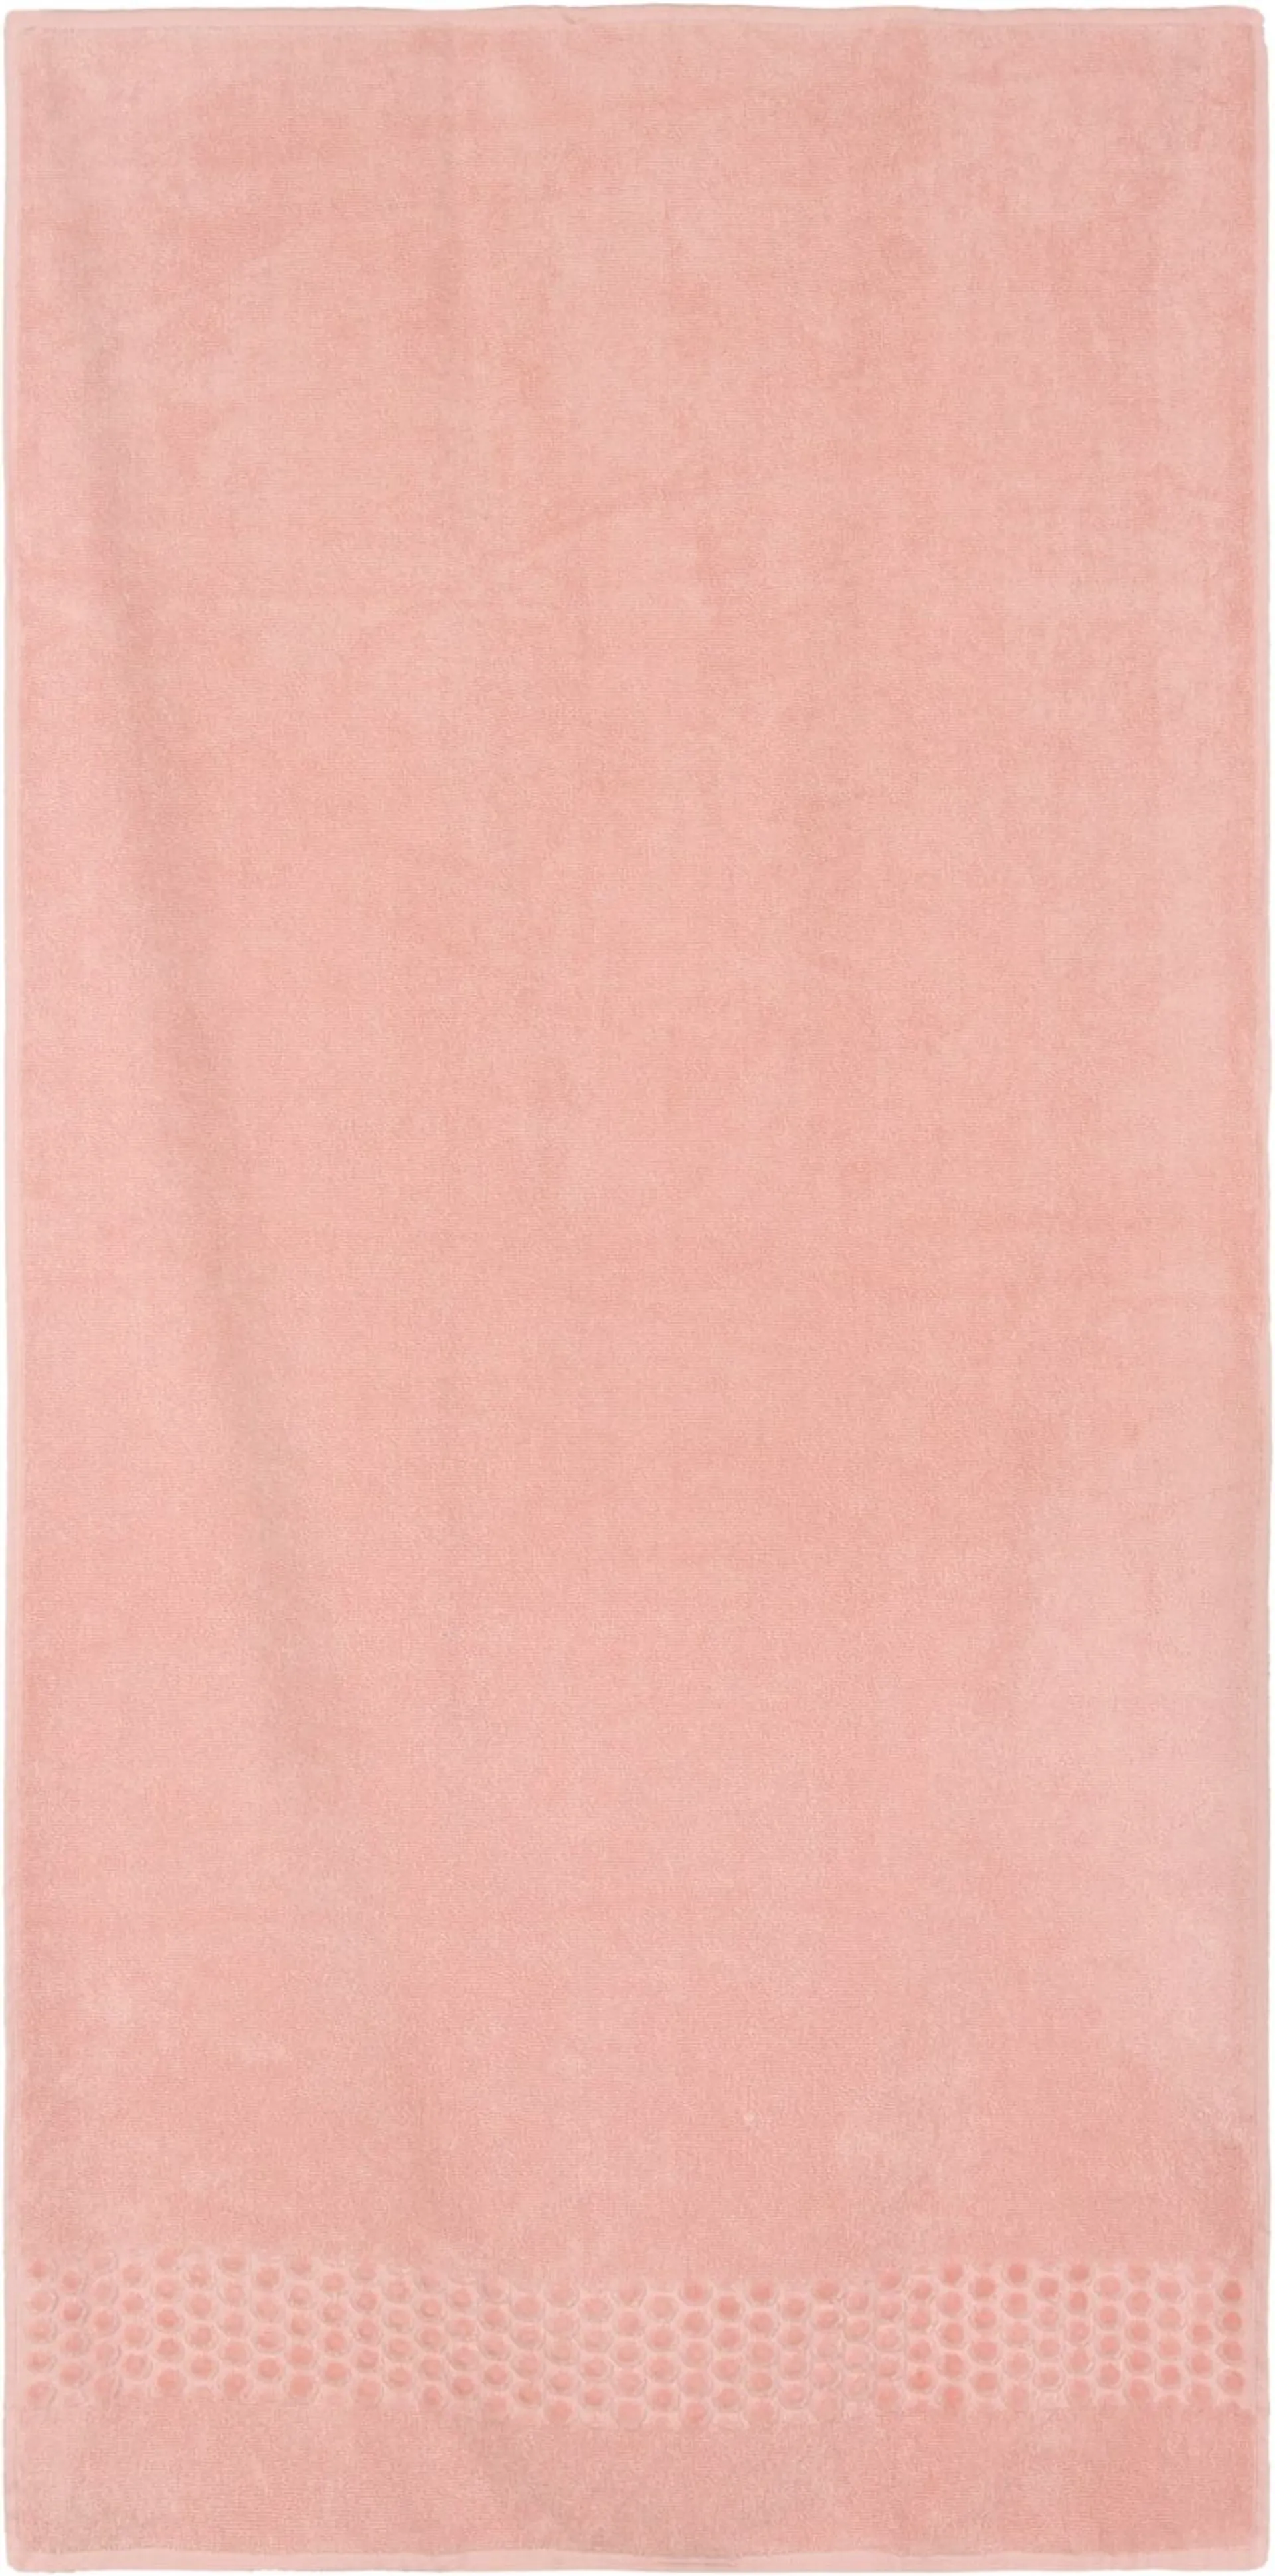 House kylpypyyhe Roman 70x140 cm, roosa